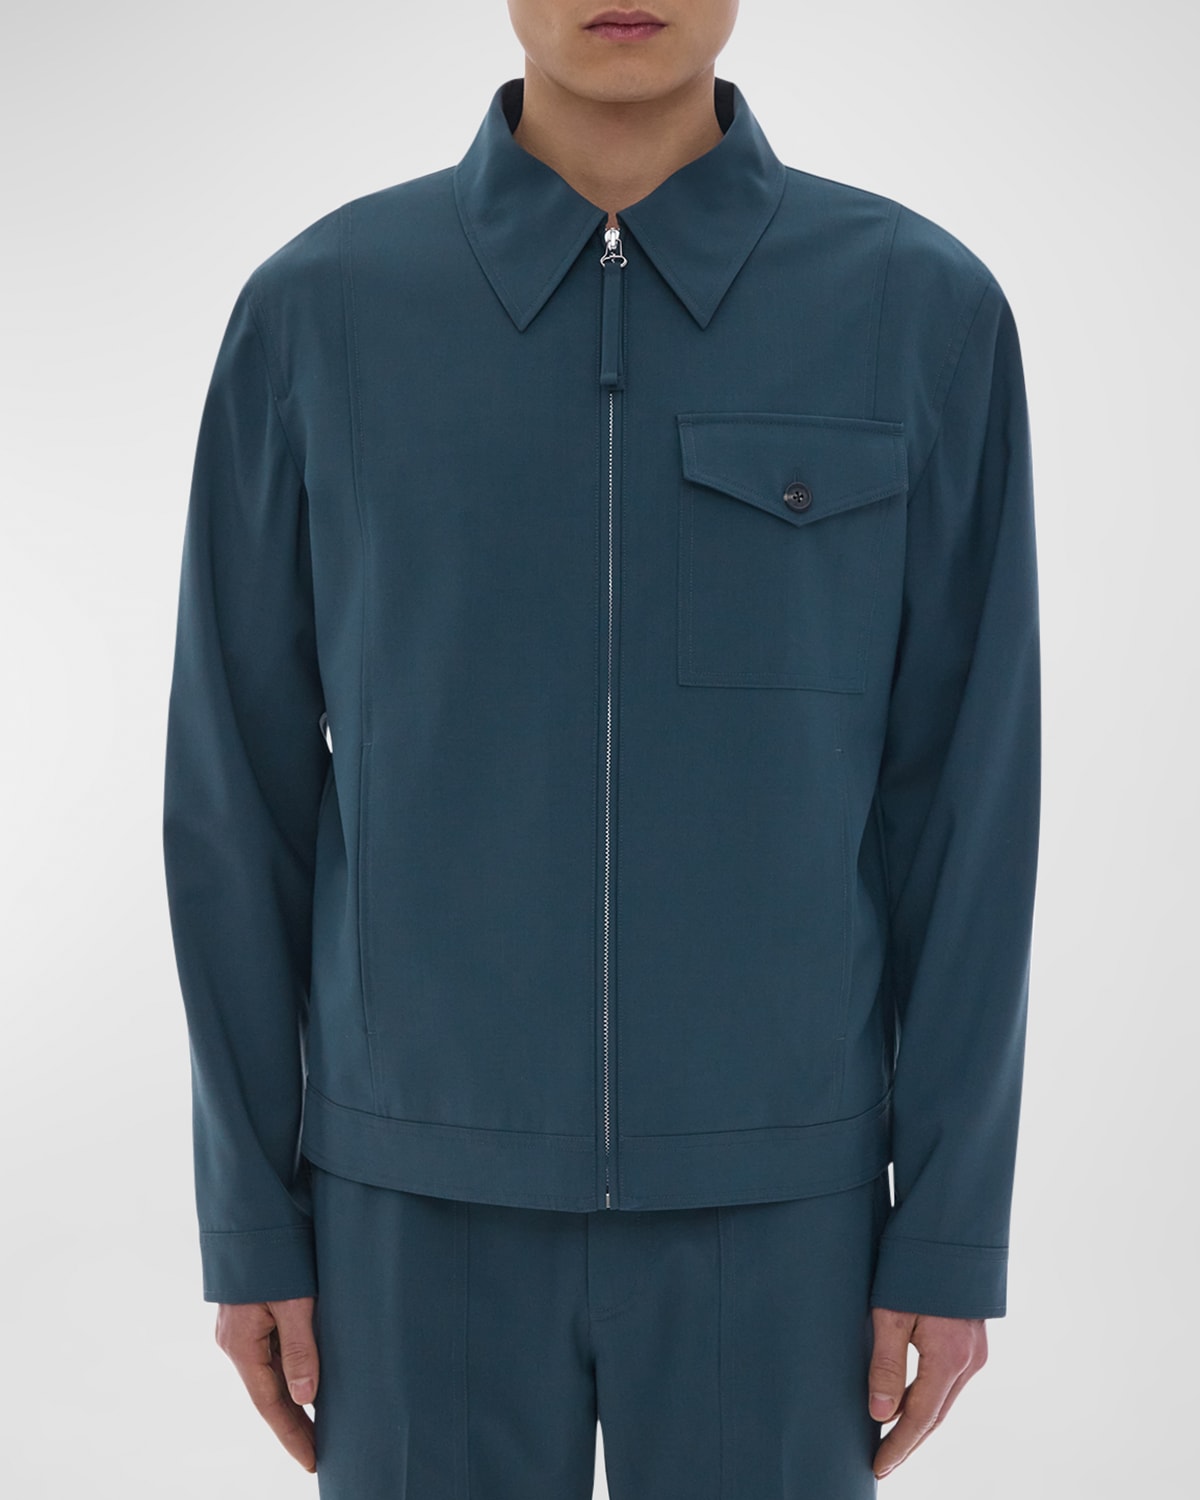 Men's Tailored Zip Jacket